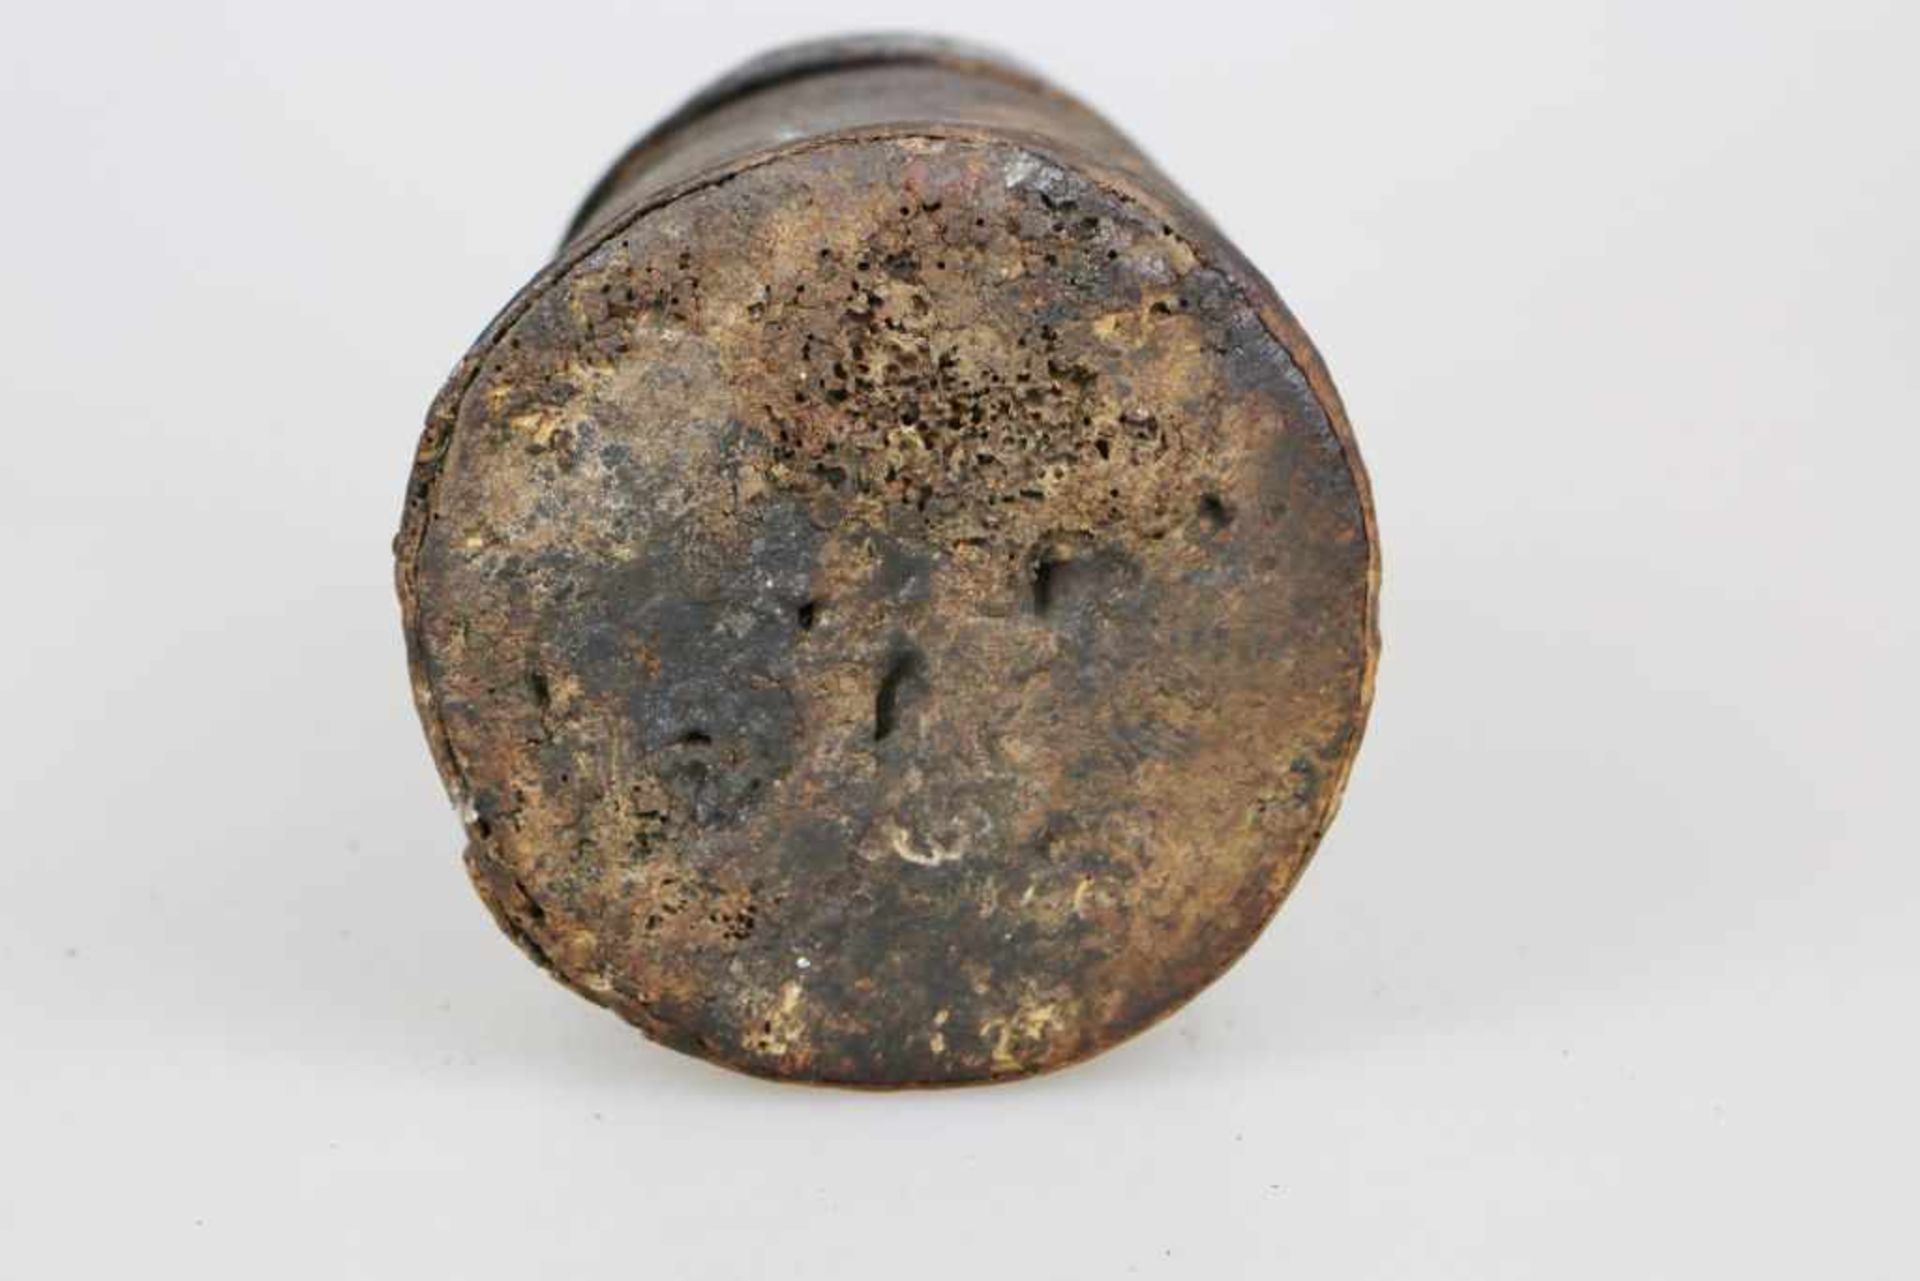 GABUN, FANG, BIERI (BYERIE) äußerst rares Reliquienbehältnis mit Figur, vollständig erhalten. - Image 5 of 5